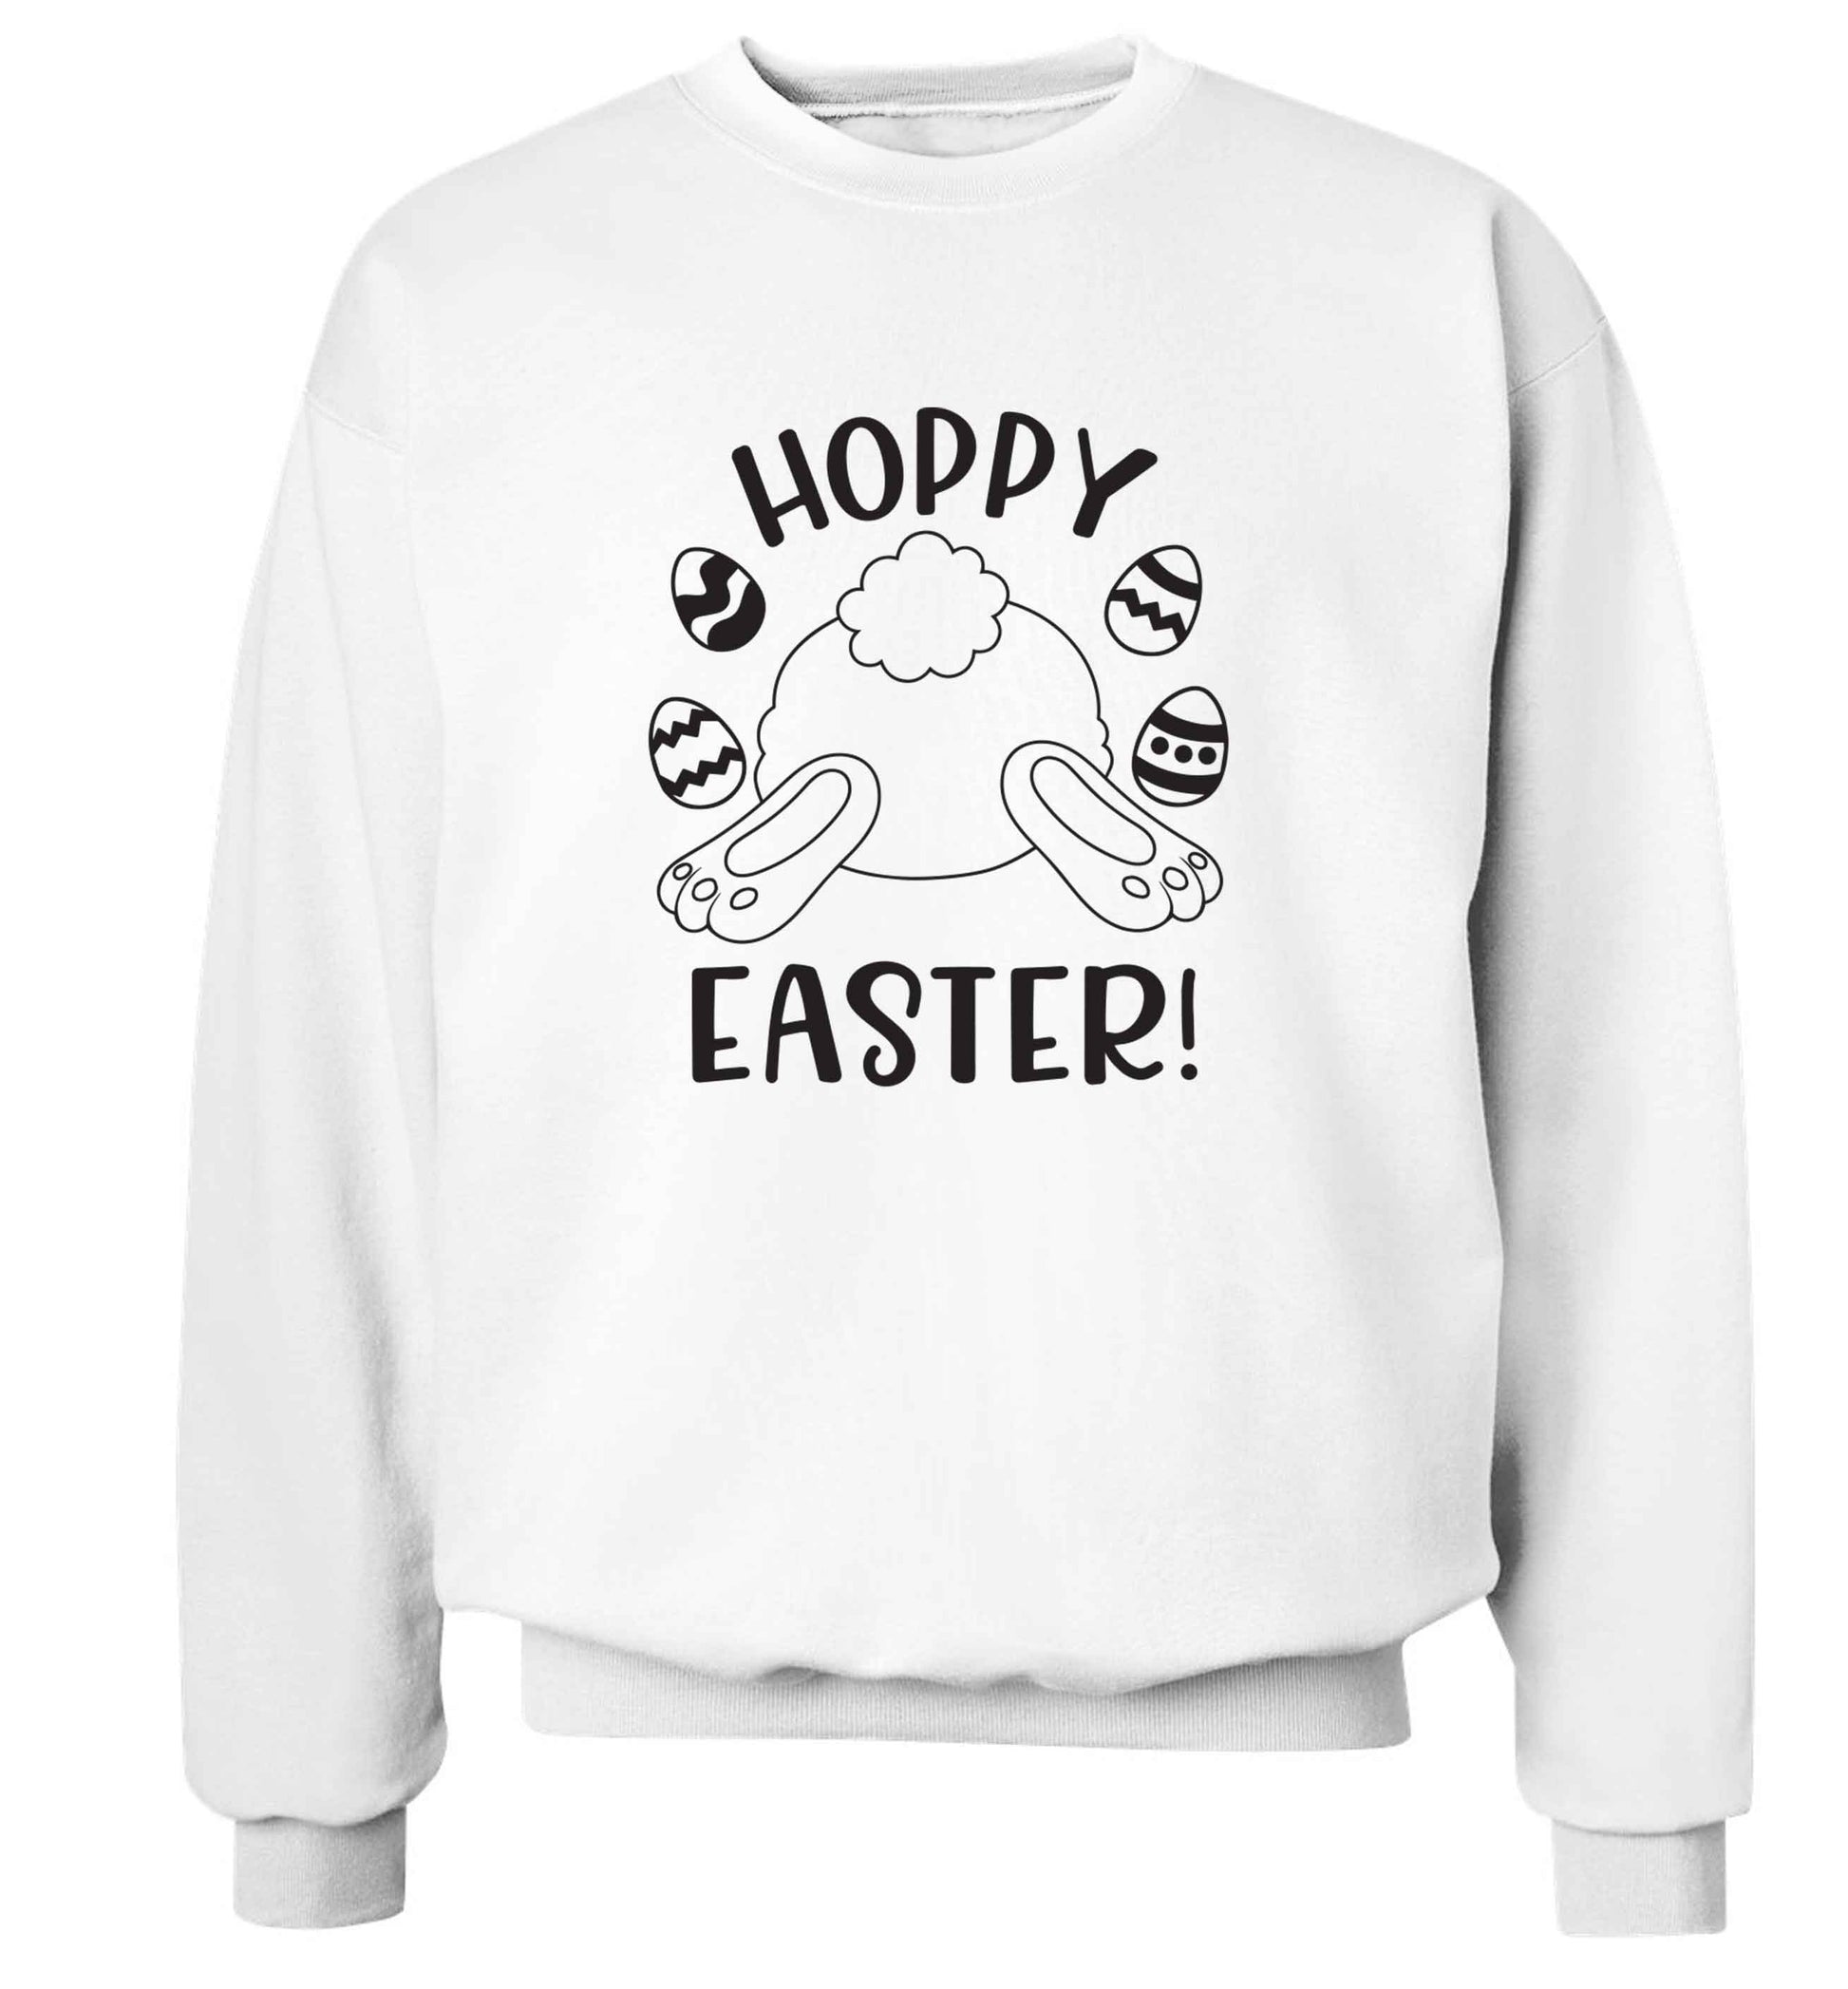 Hoppy Easter adult's unisex white sweater 2XL